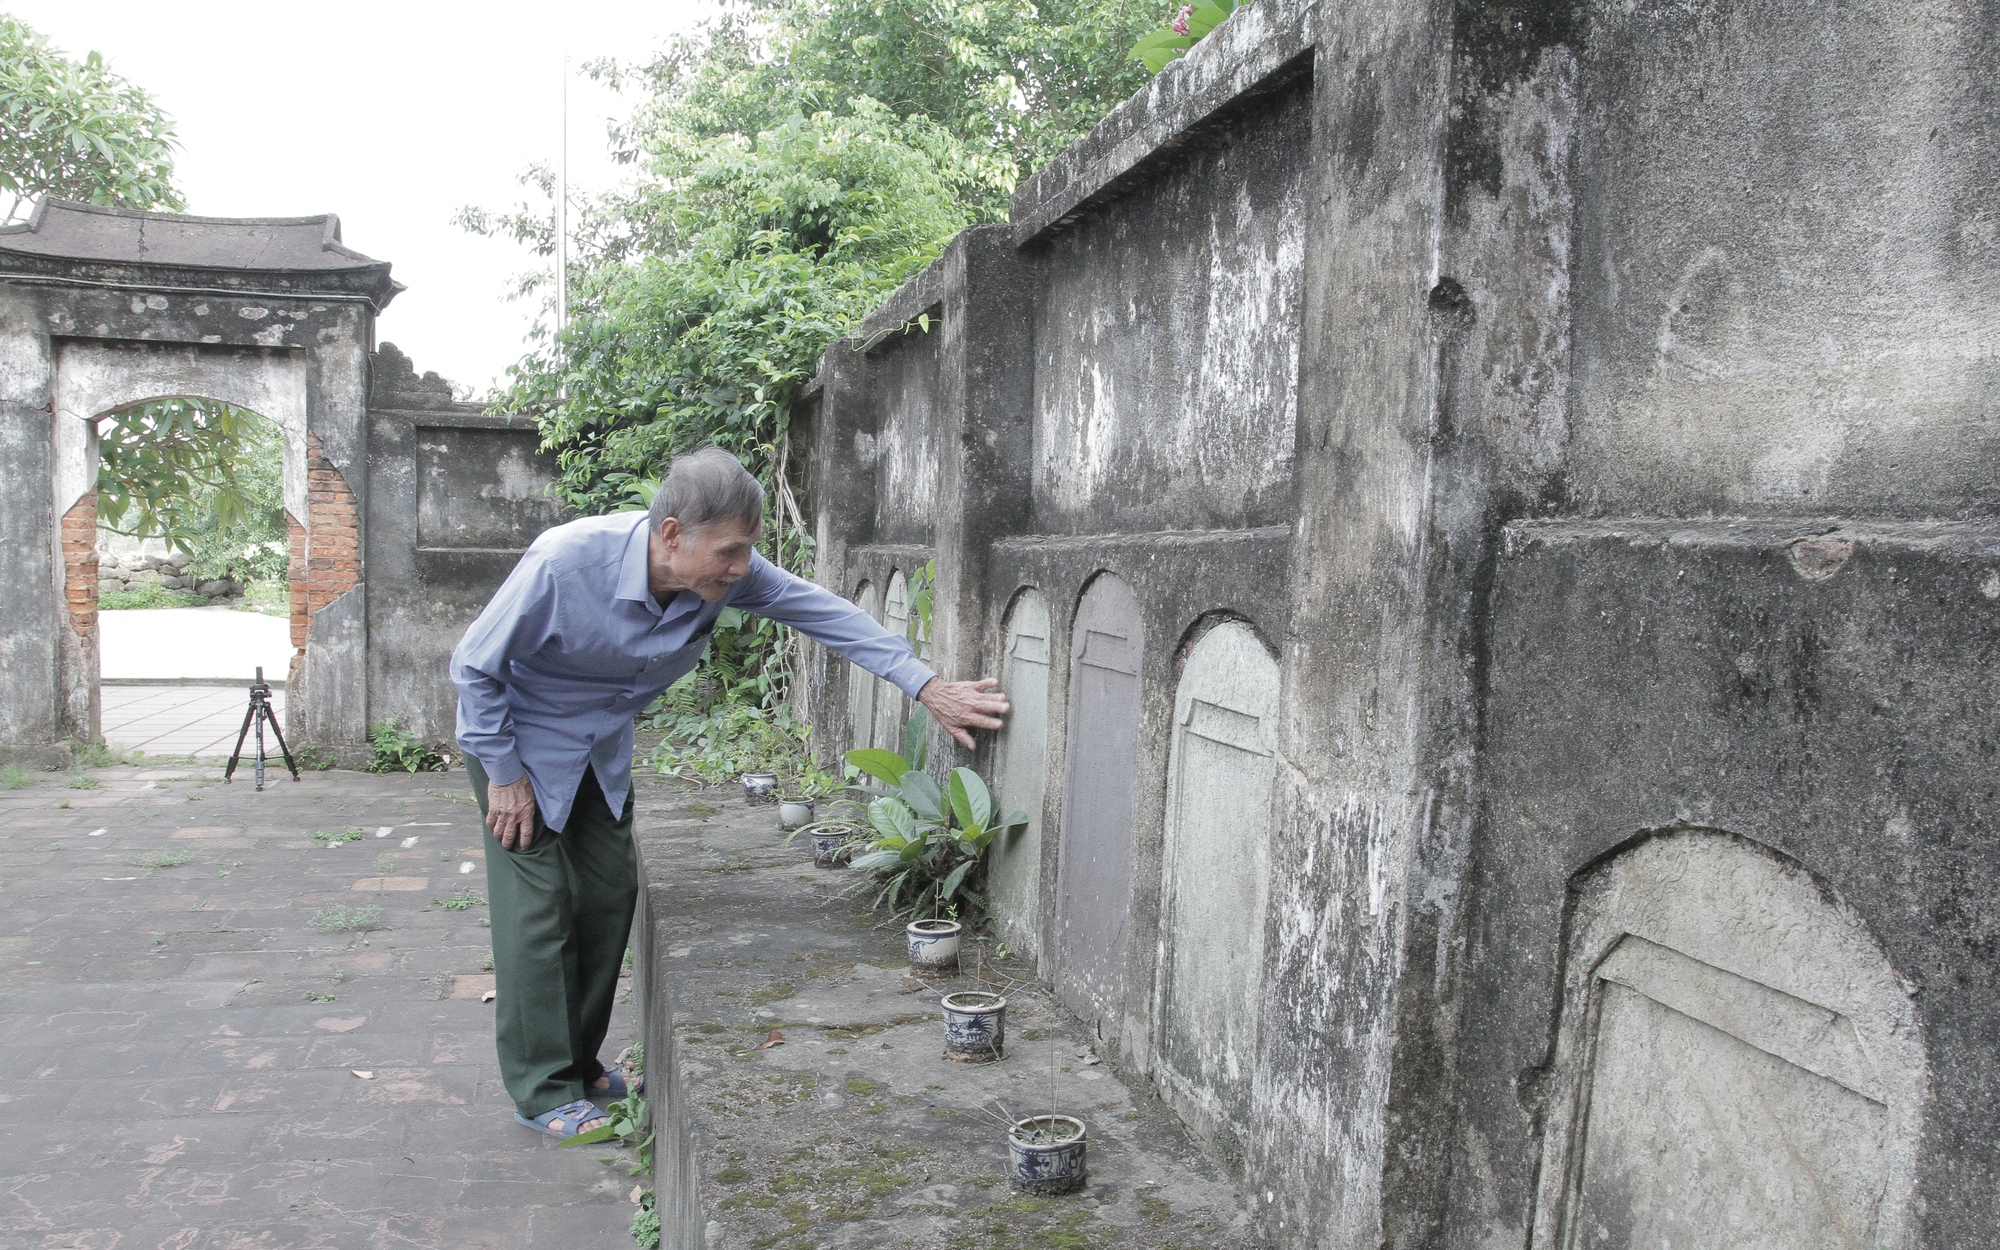 Ngôi chùa cổ ở Thái Nguyên có từ thời nhà Nguyễn, vẫn lưu giữ được 27 bia đá quý, dân làng xem như báu vật